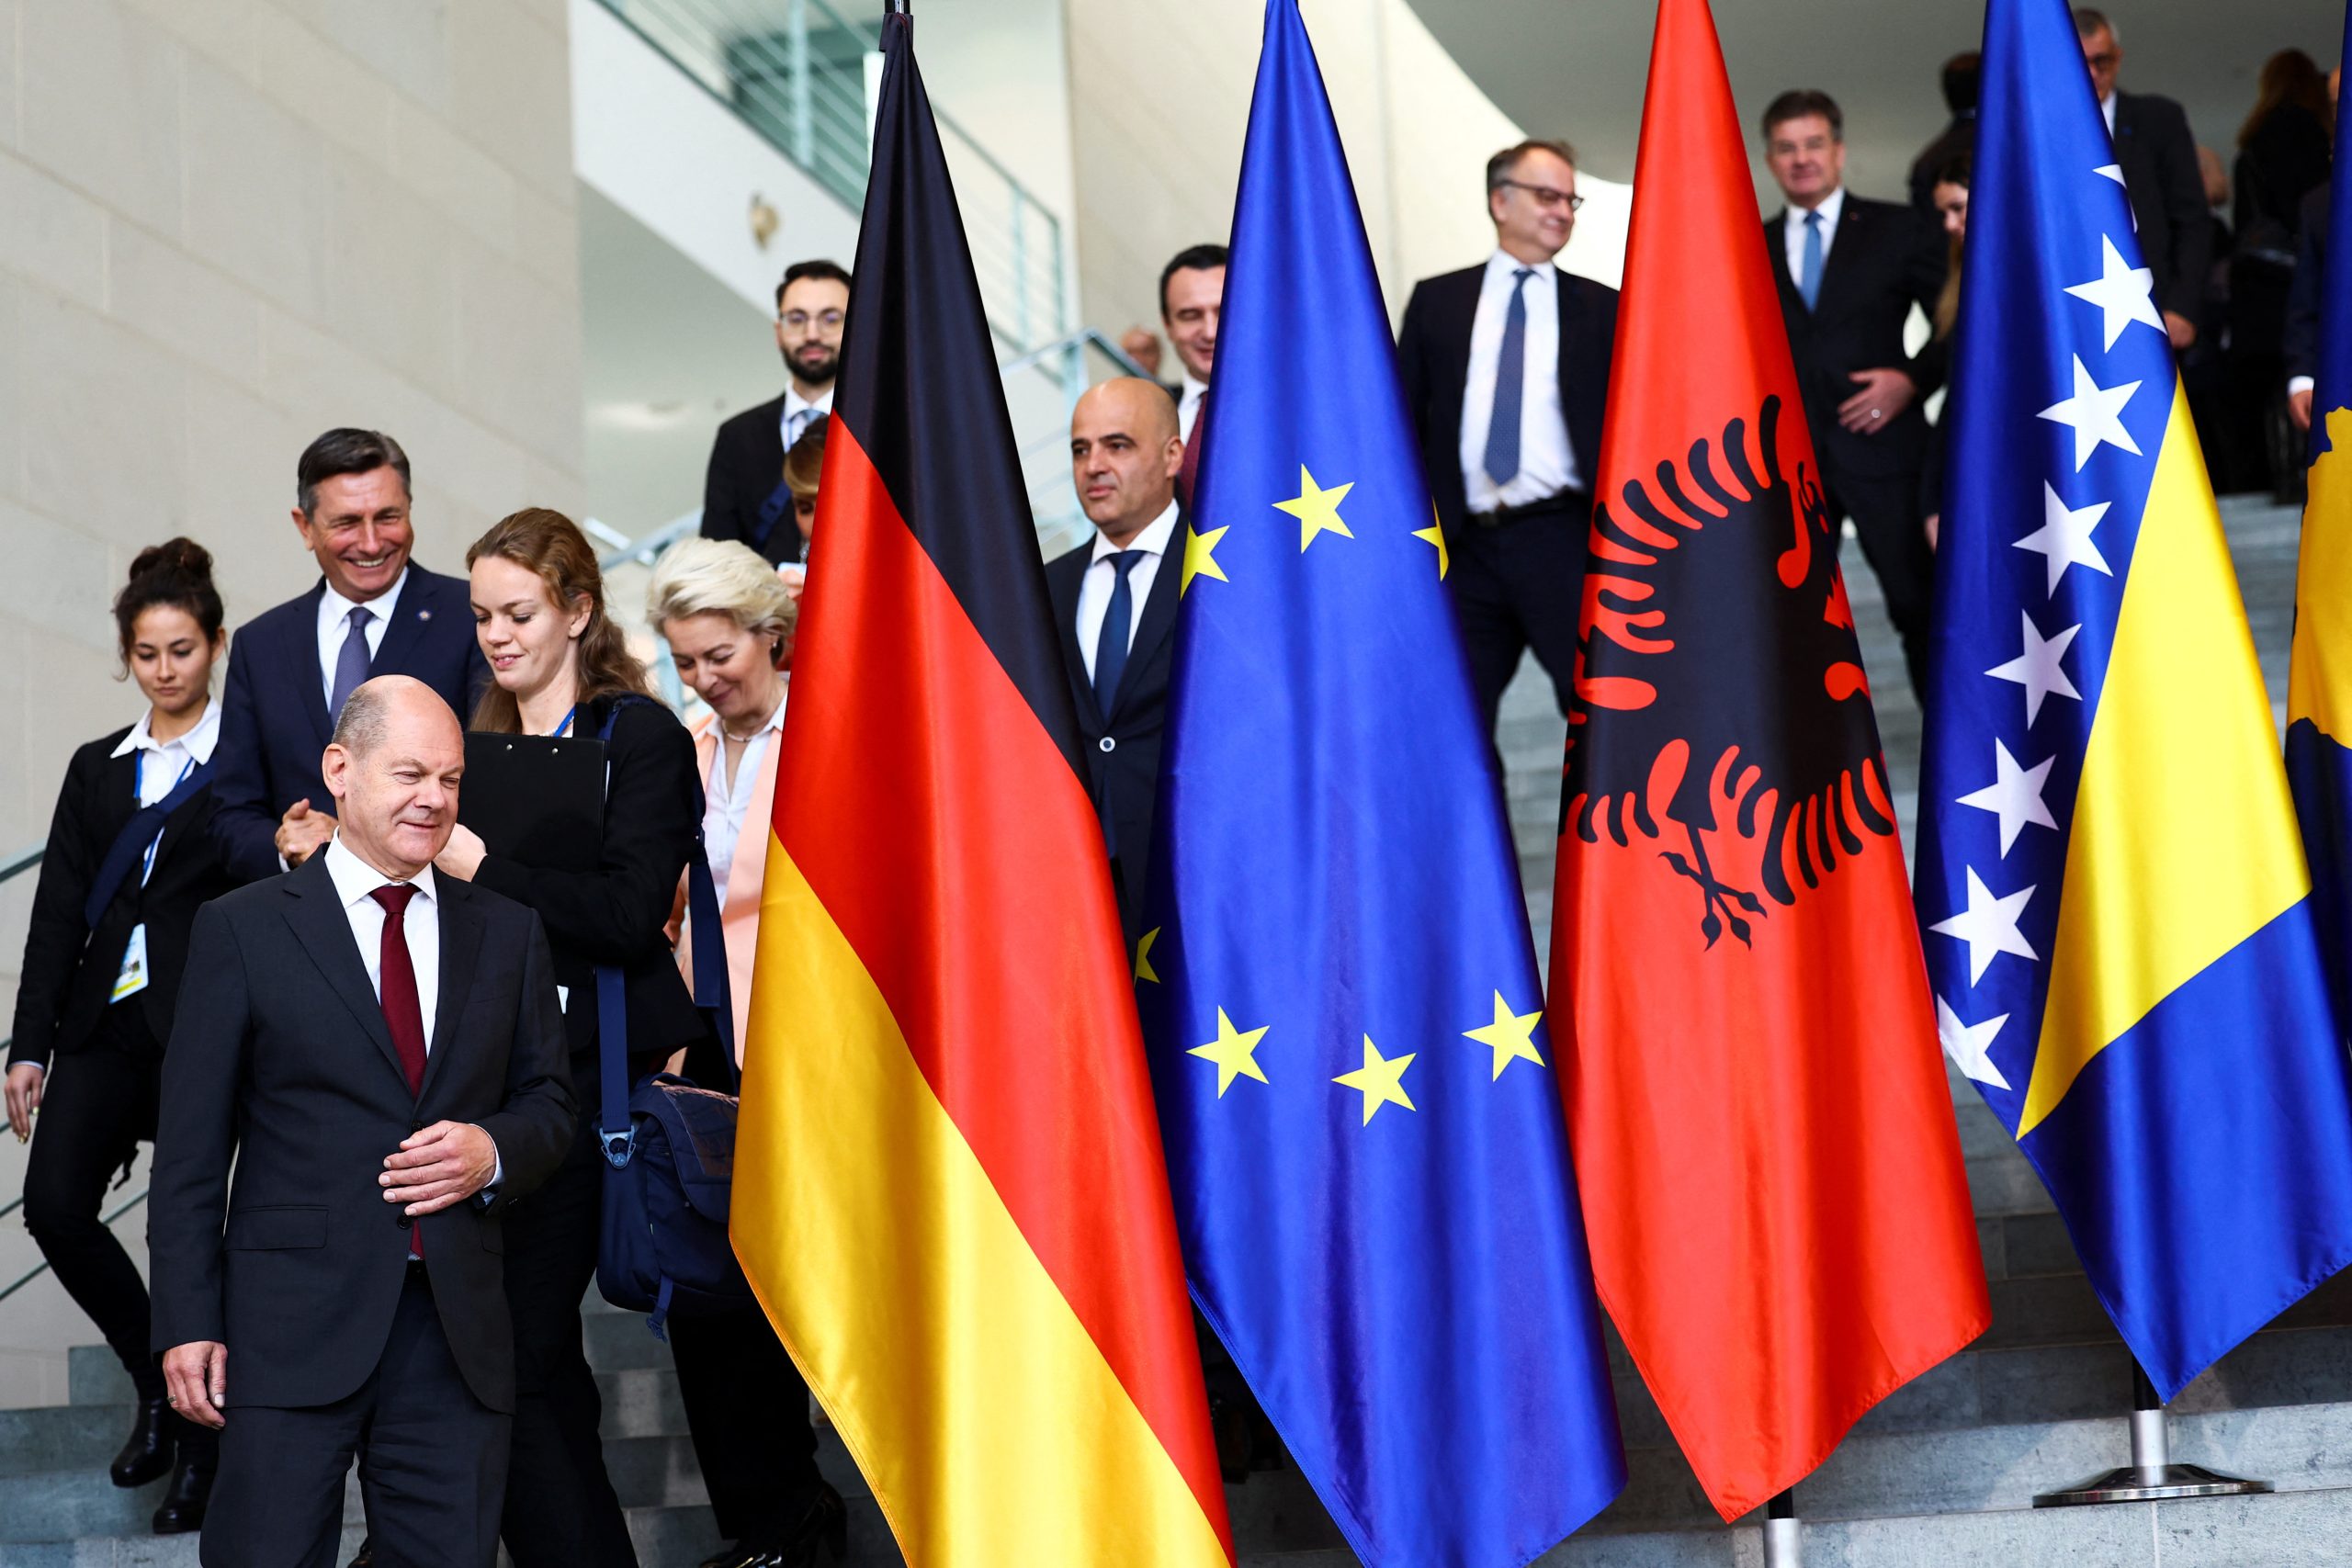  BE miratoi Planin e Rritjes për Ballkanin Perëndimor